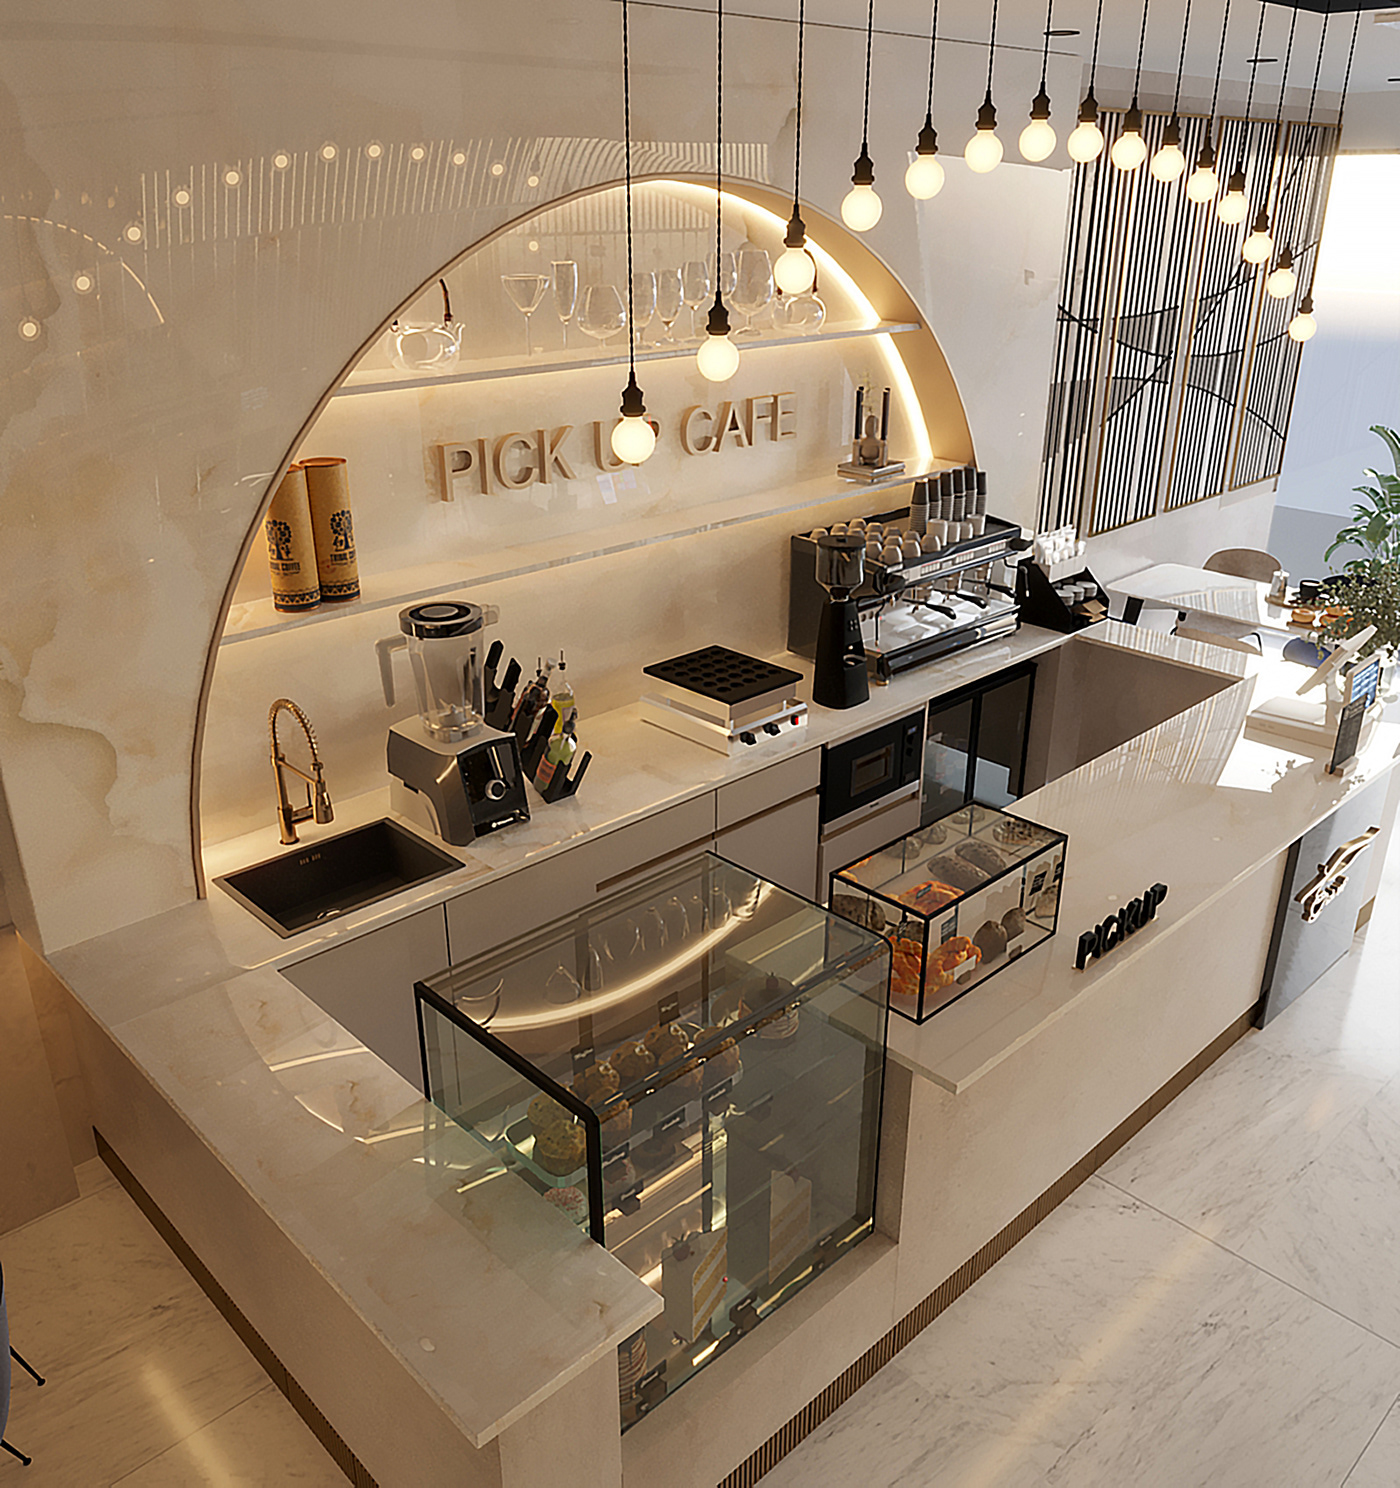 3ds max architecture archviz coffee shop corona interior design  modern Render Retail design visualization